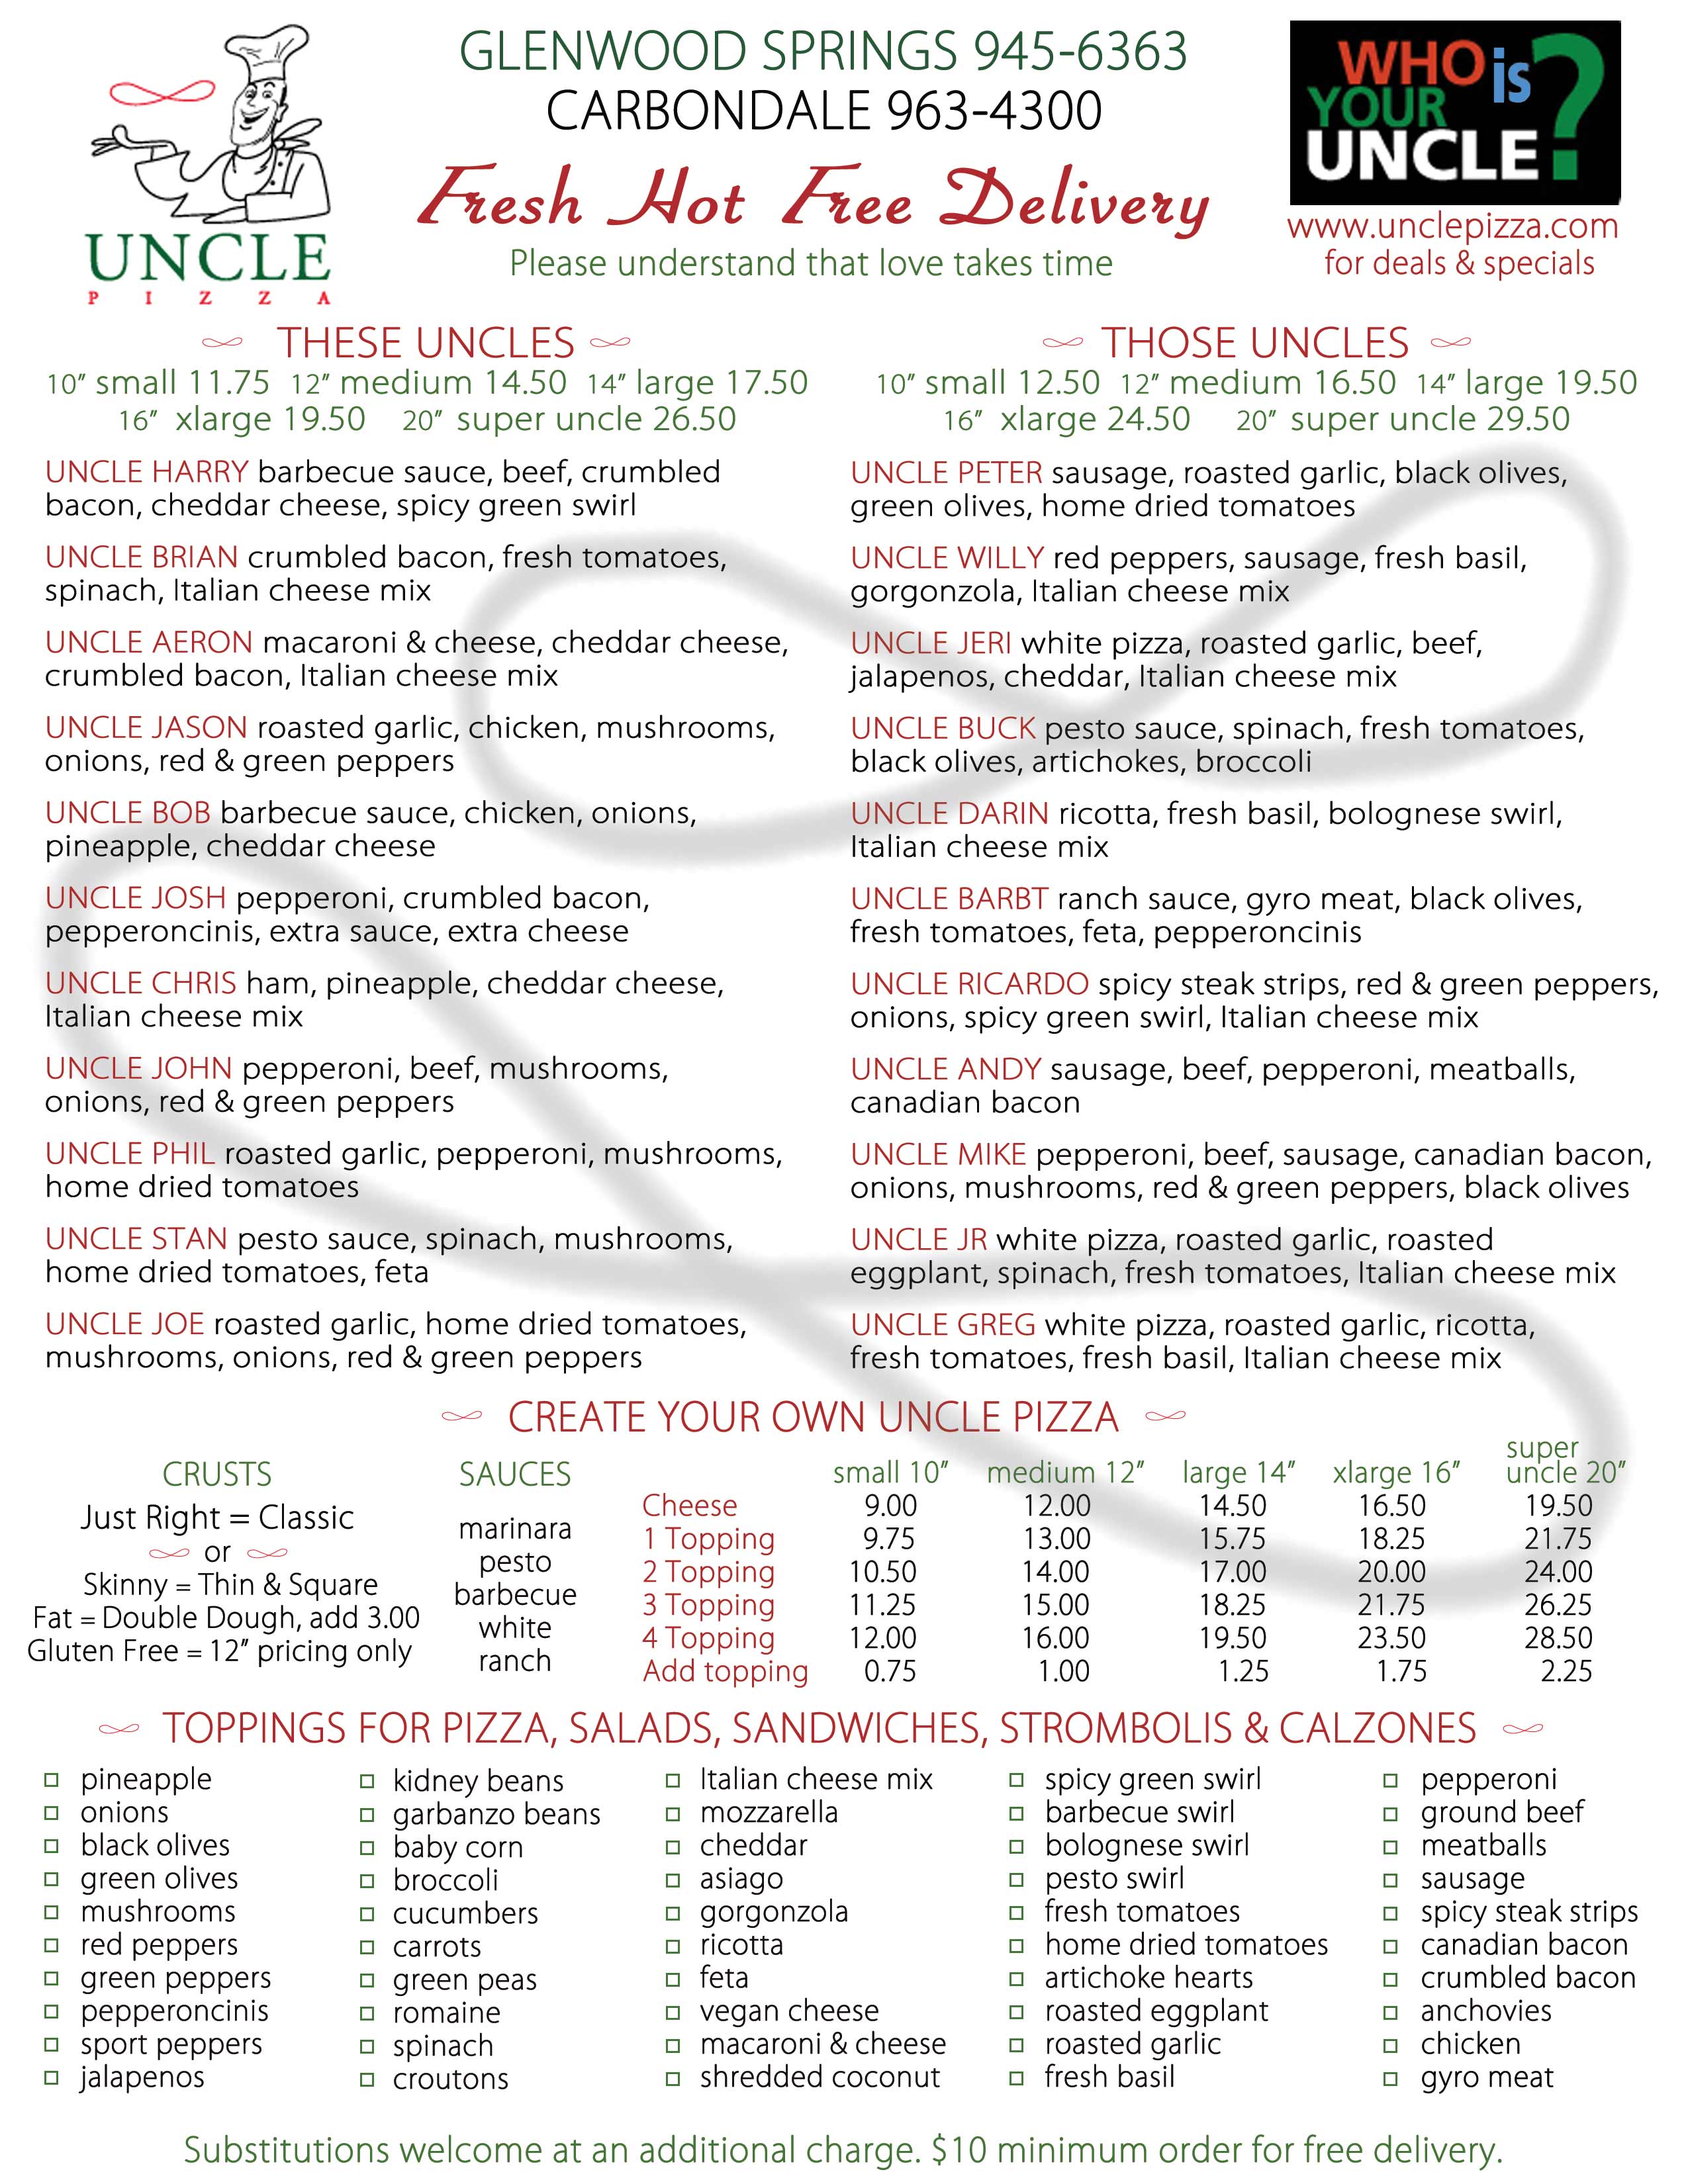 Uncle PIzza menu